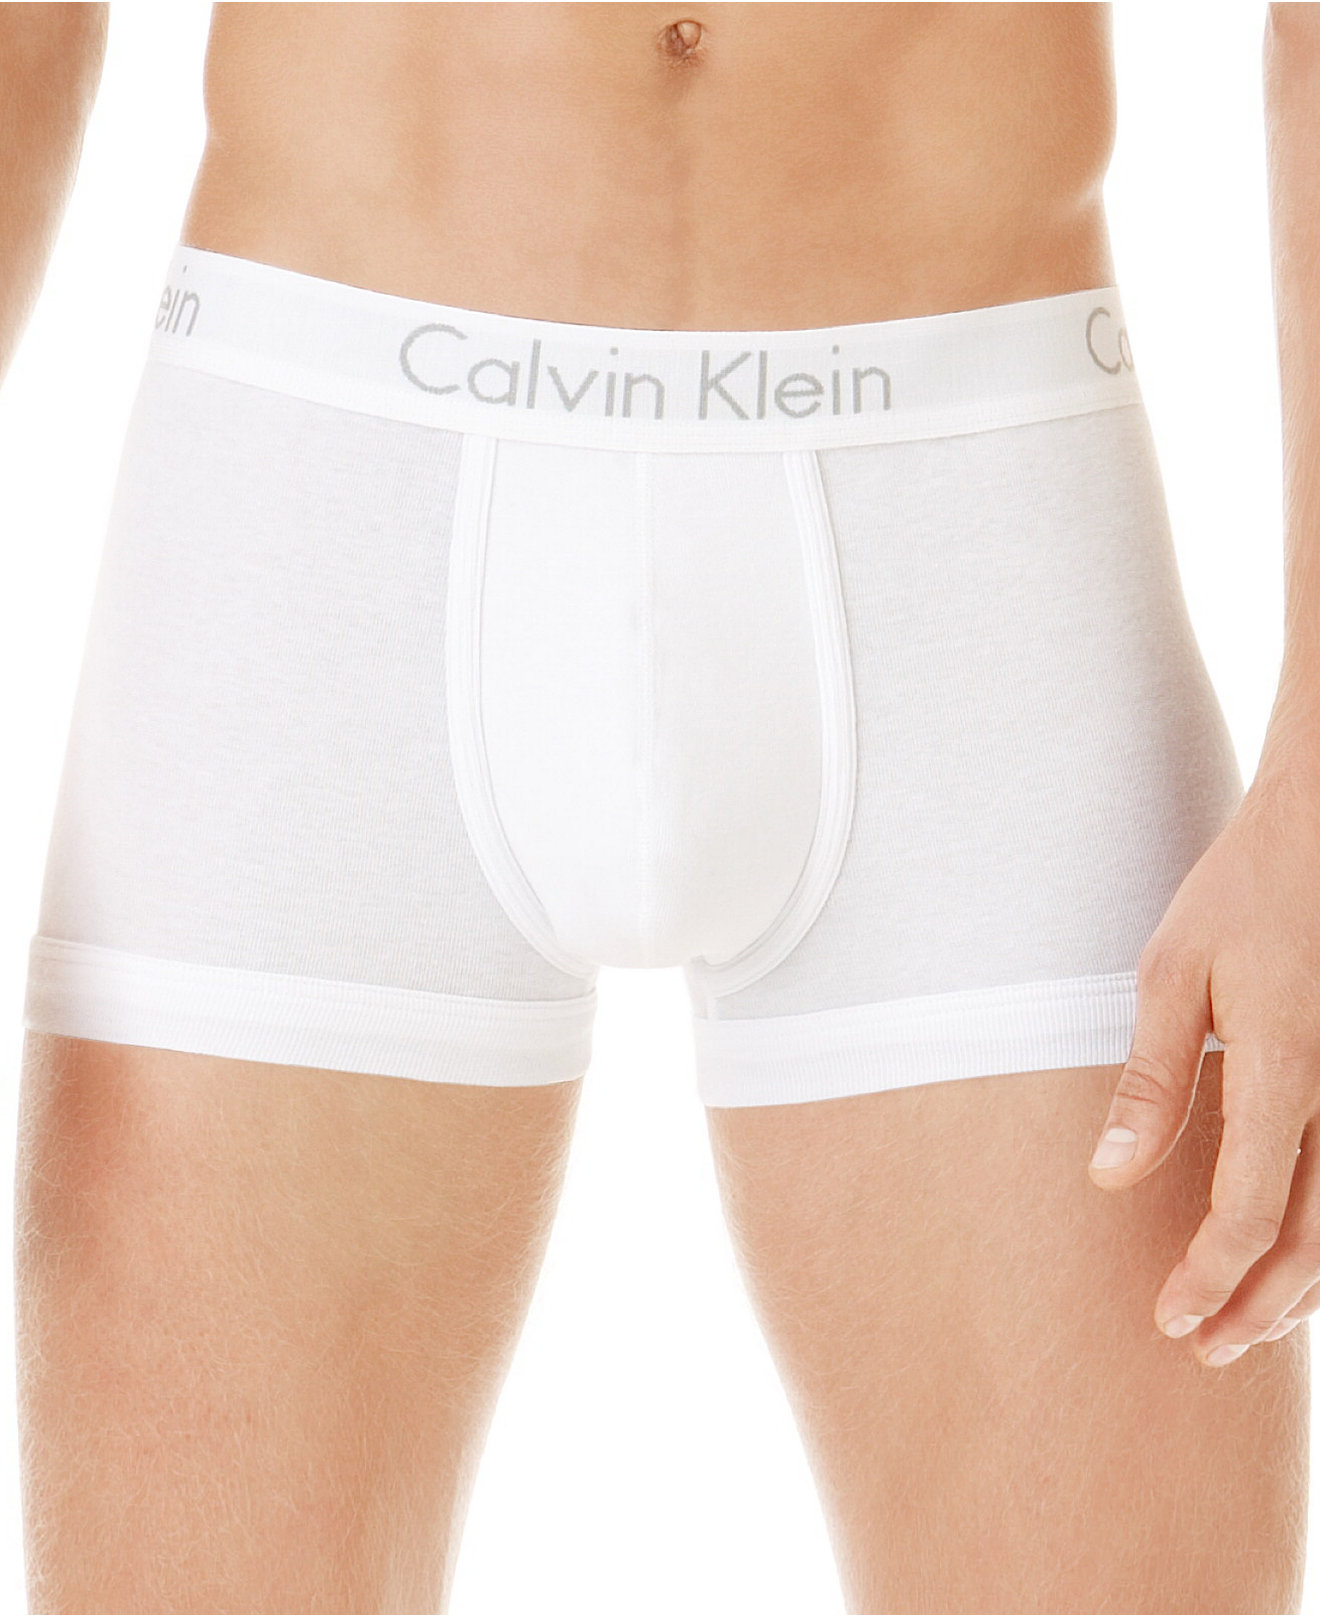 Calvin Klein Men's Underwear, Body Trunk 2-Pack